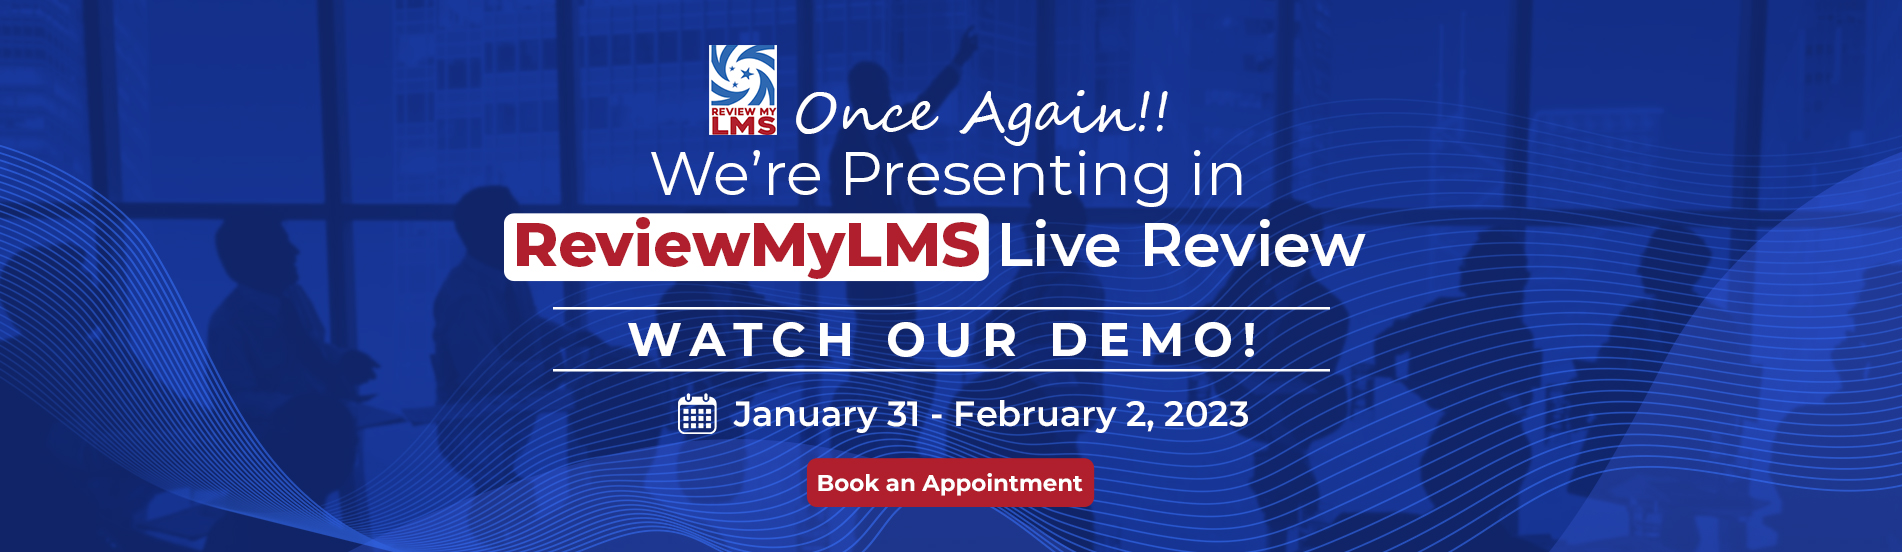 Watch Us Demo @Reviewmylms.com Live Review